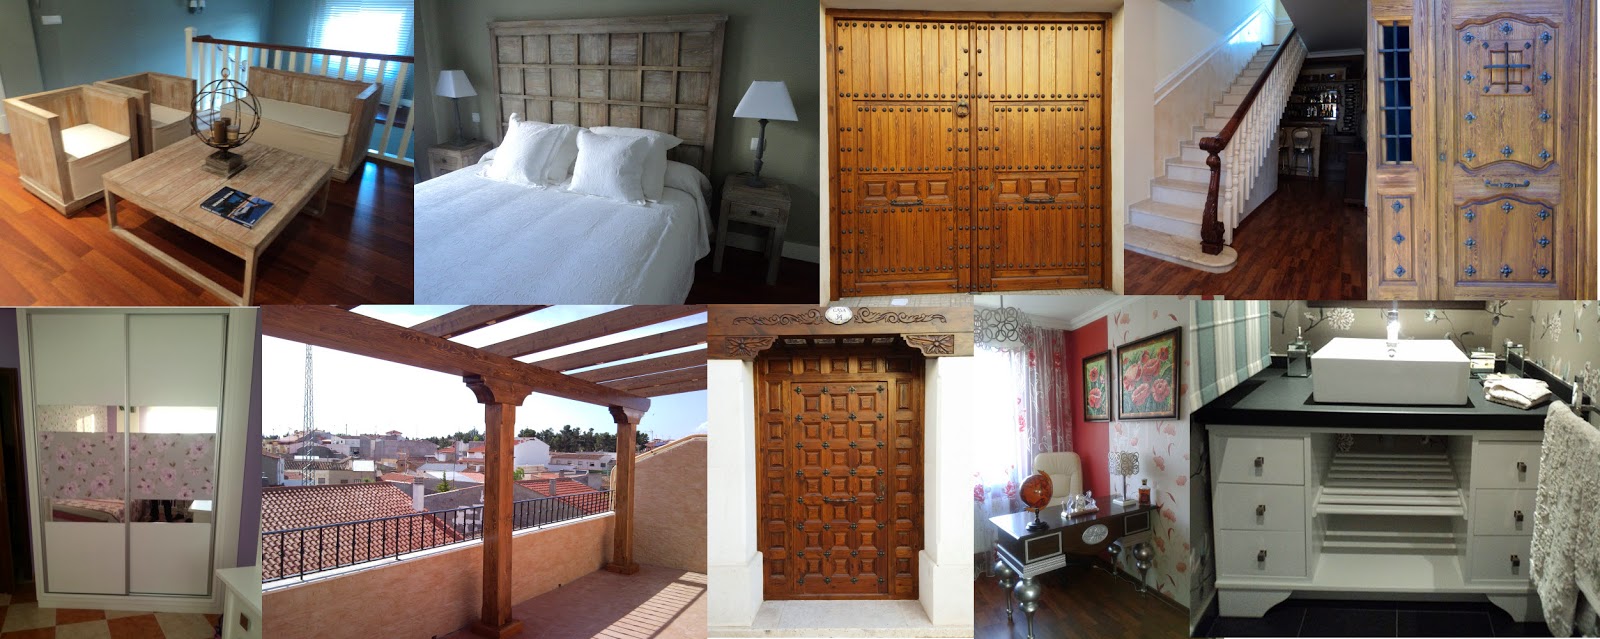 puertas rústicas, puertas modernas de interior, muebles de madera a medida, armarios empotrados, escaleras